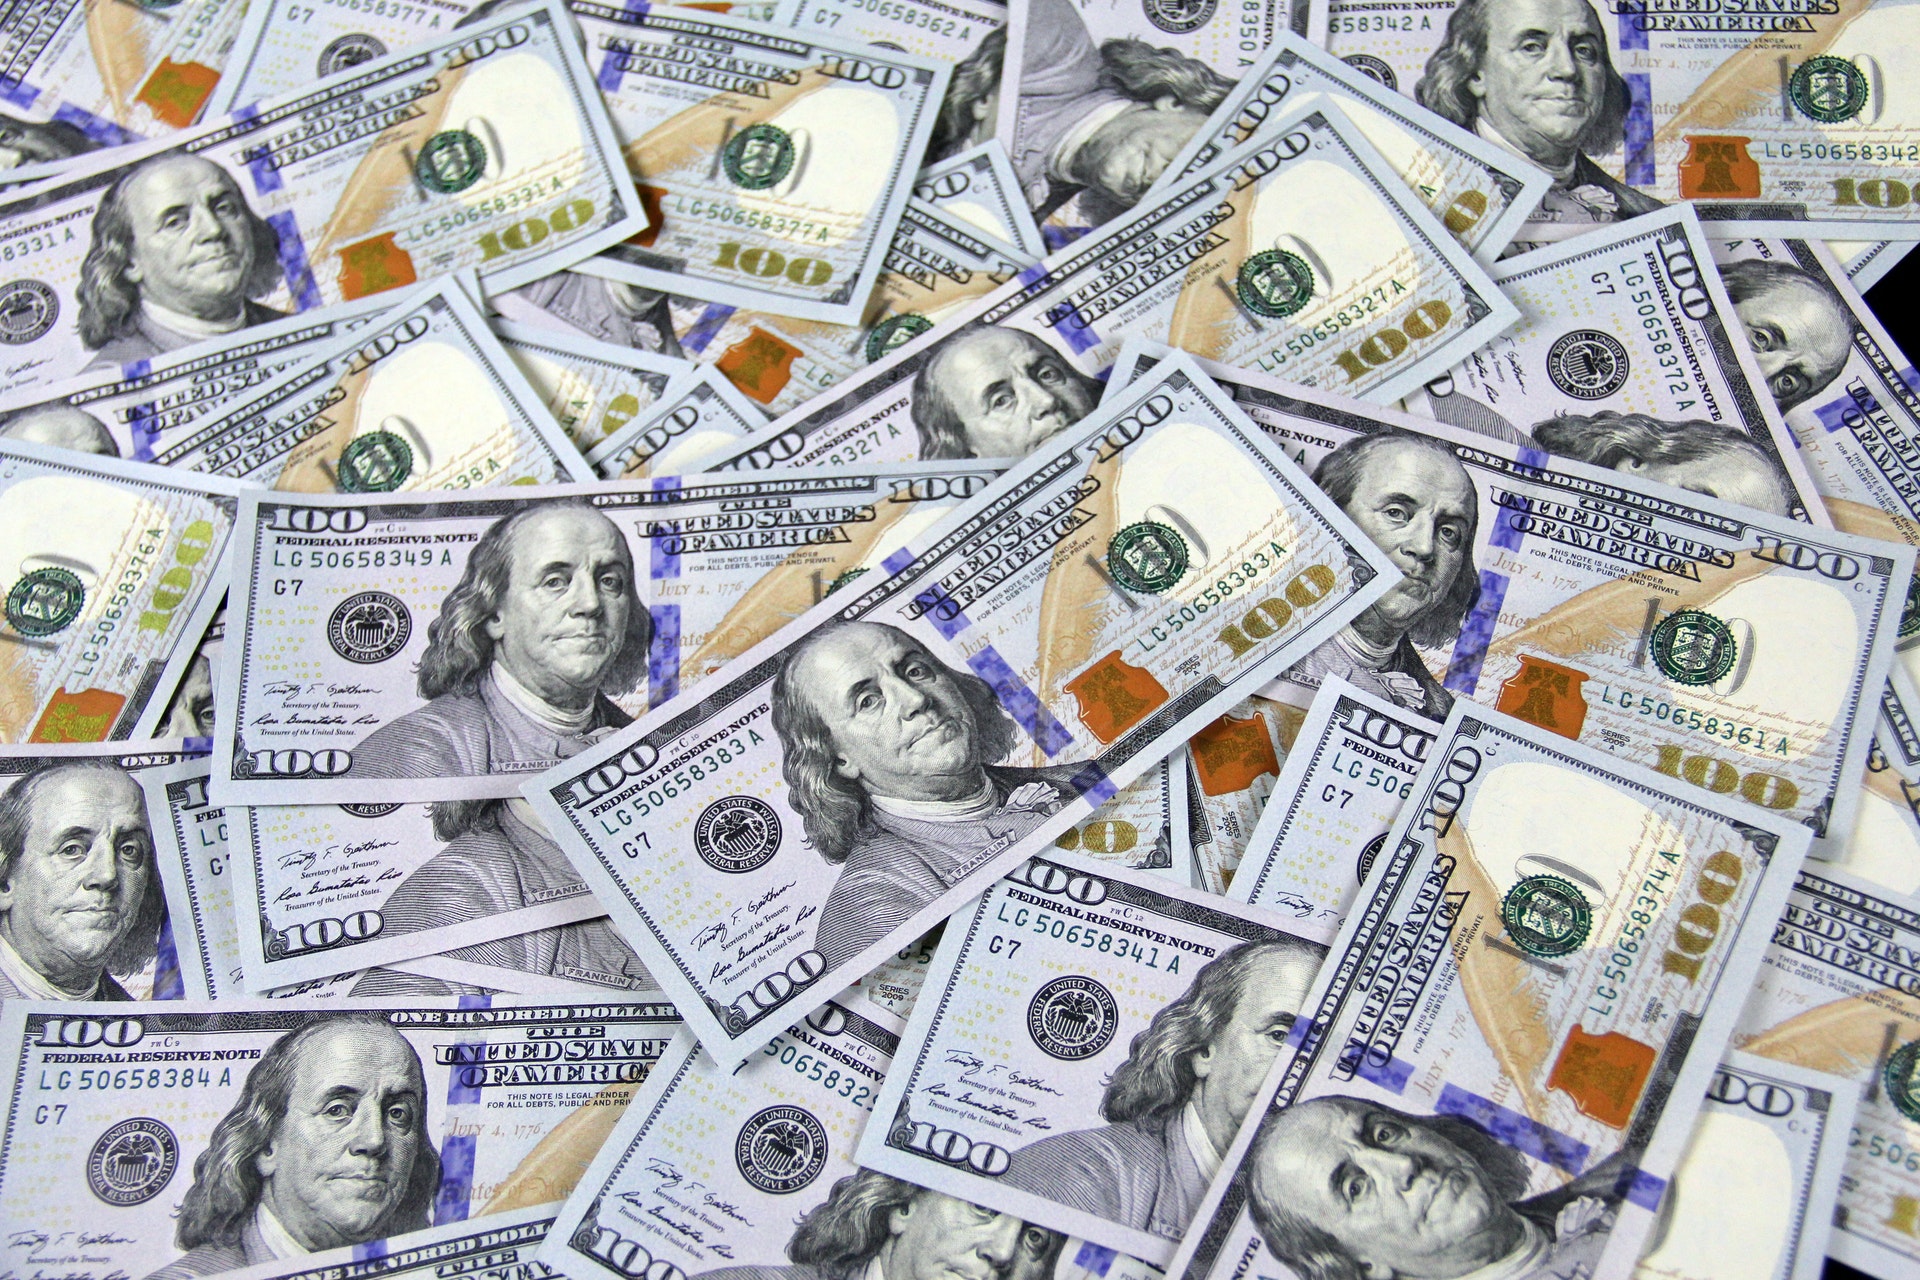 CEO americano recebeu R$ 1,6 bilhão em 2021; veja os MAIORES SALÁRIOS (Imagem: John Guccione/Pexels)